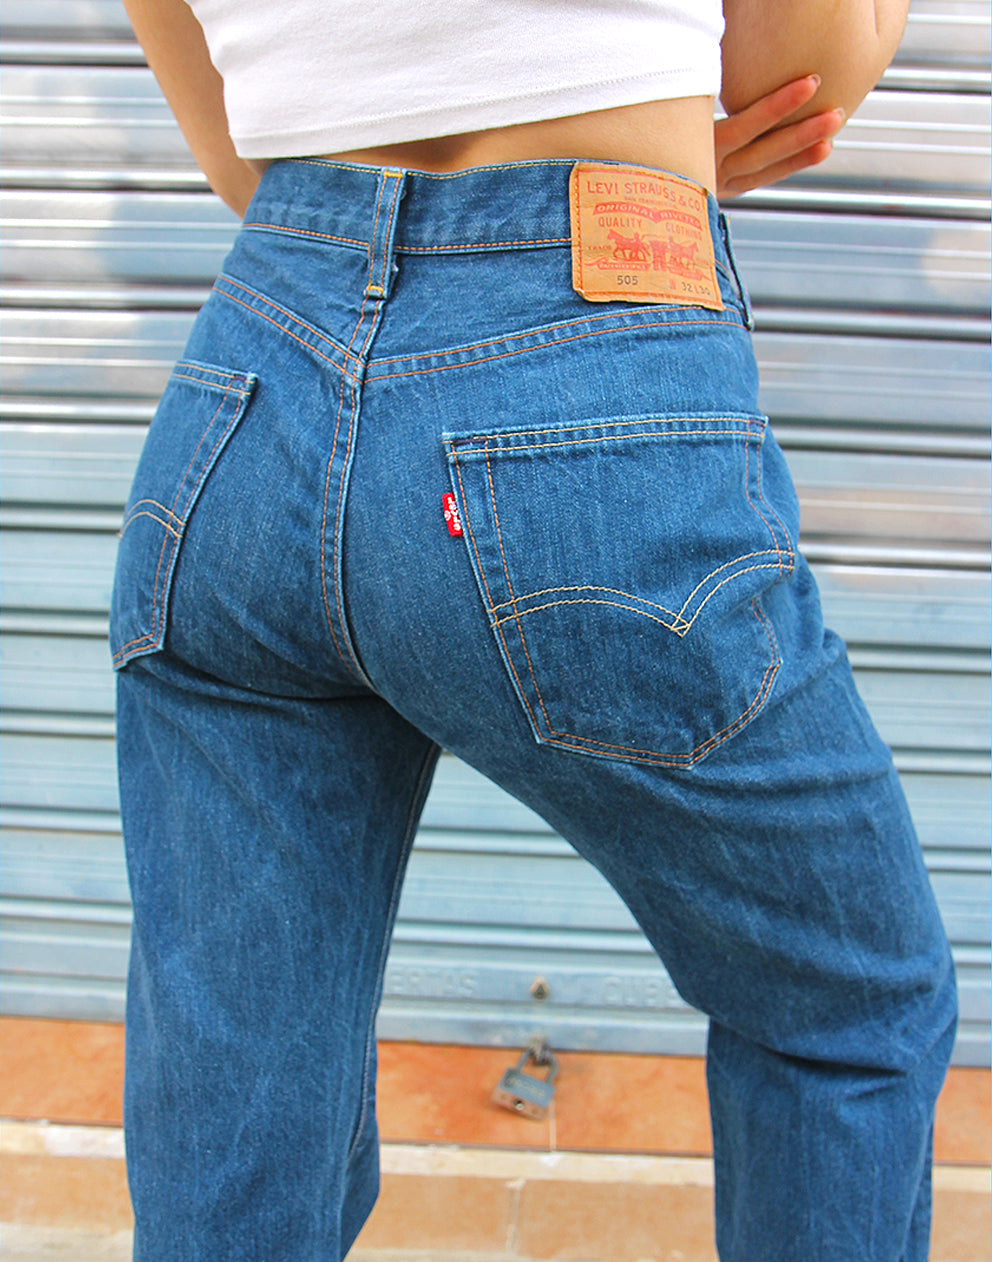 Original Levi's 505 Classic Blue Denim High Rise Jeans 30